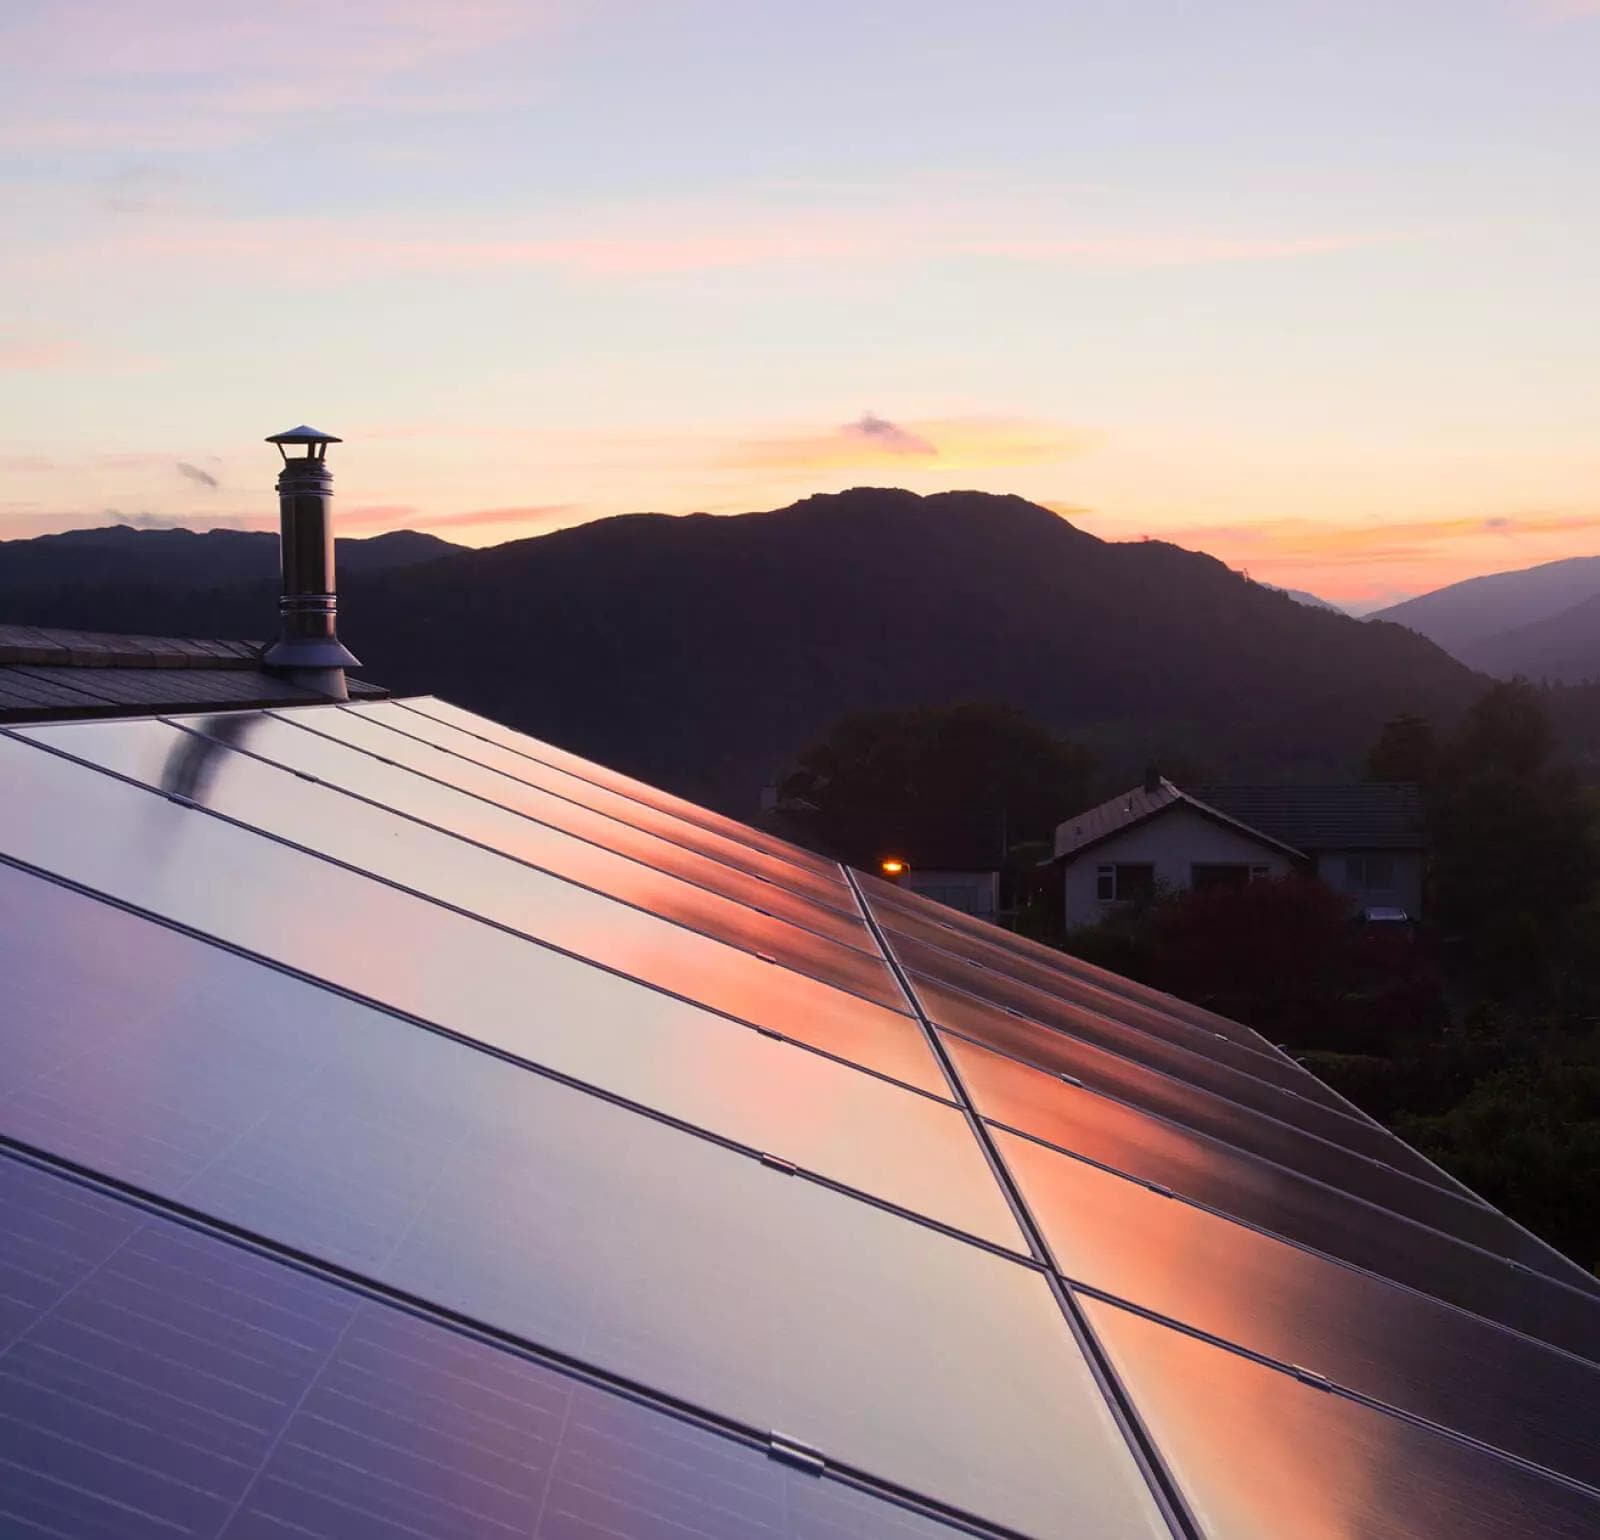 Kuća sa solarnim panelima na krovu u ruralnom planinskom okruženju.